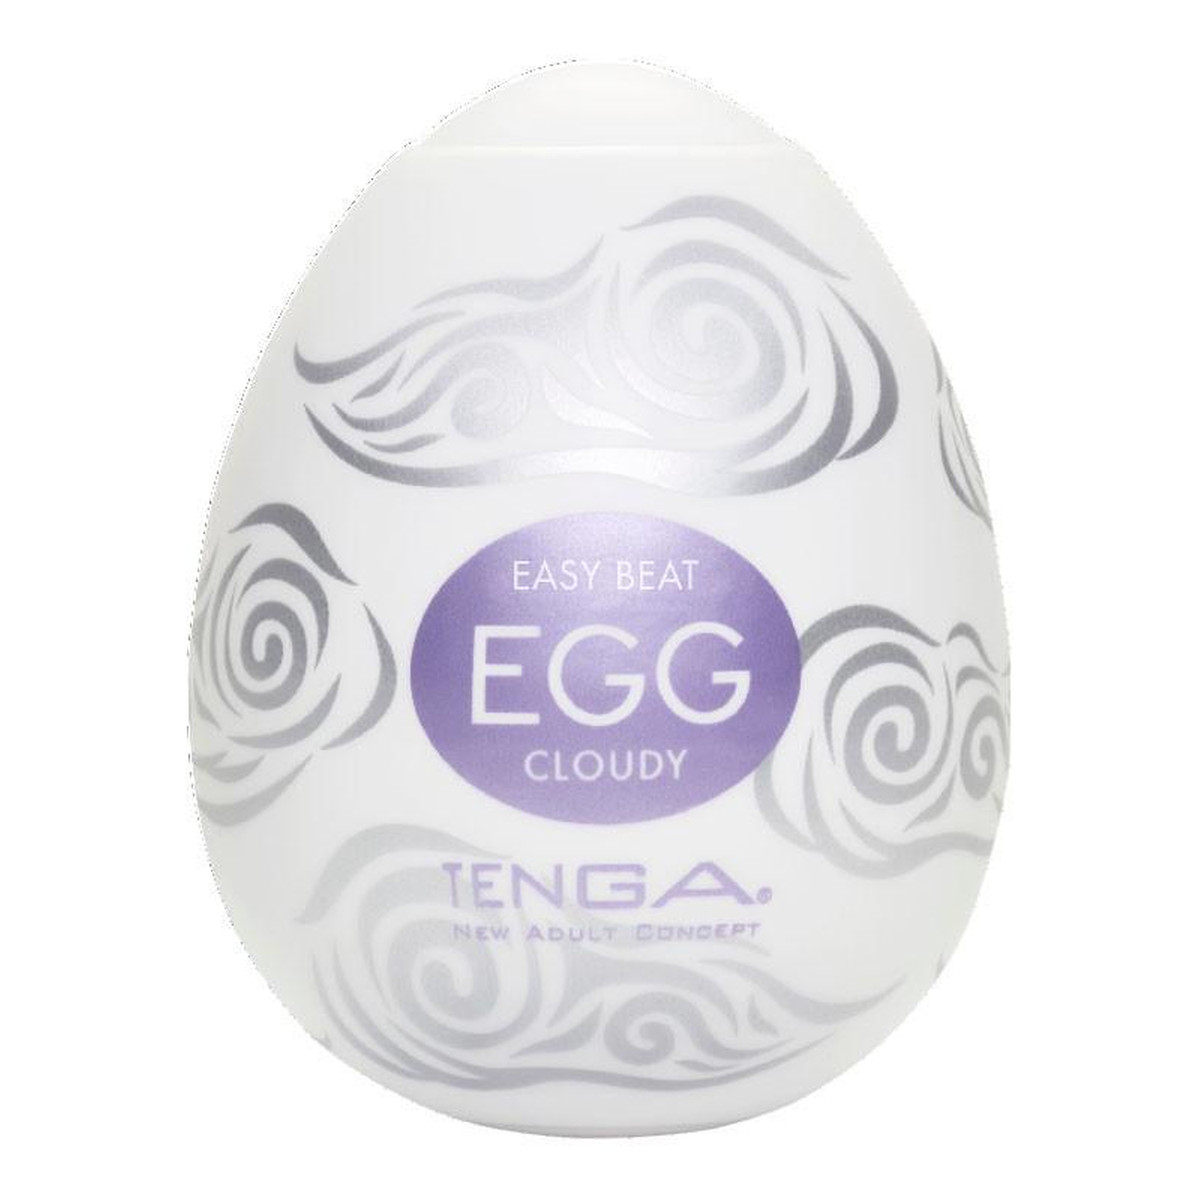 Tenga Easy beat egg cloudy jednorazowy masturbator w kształcie jajka